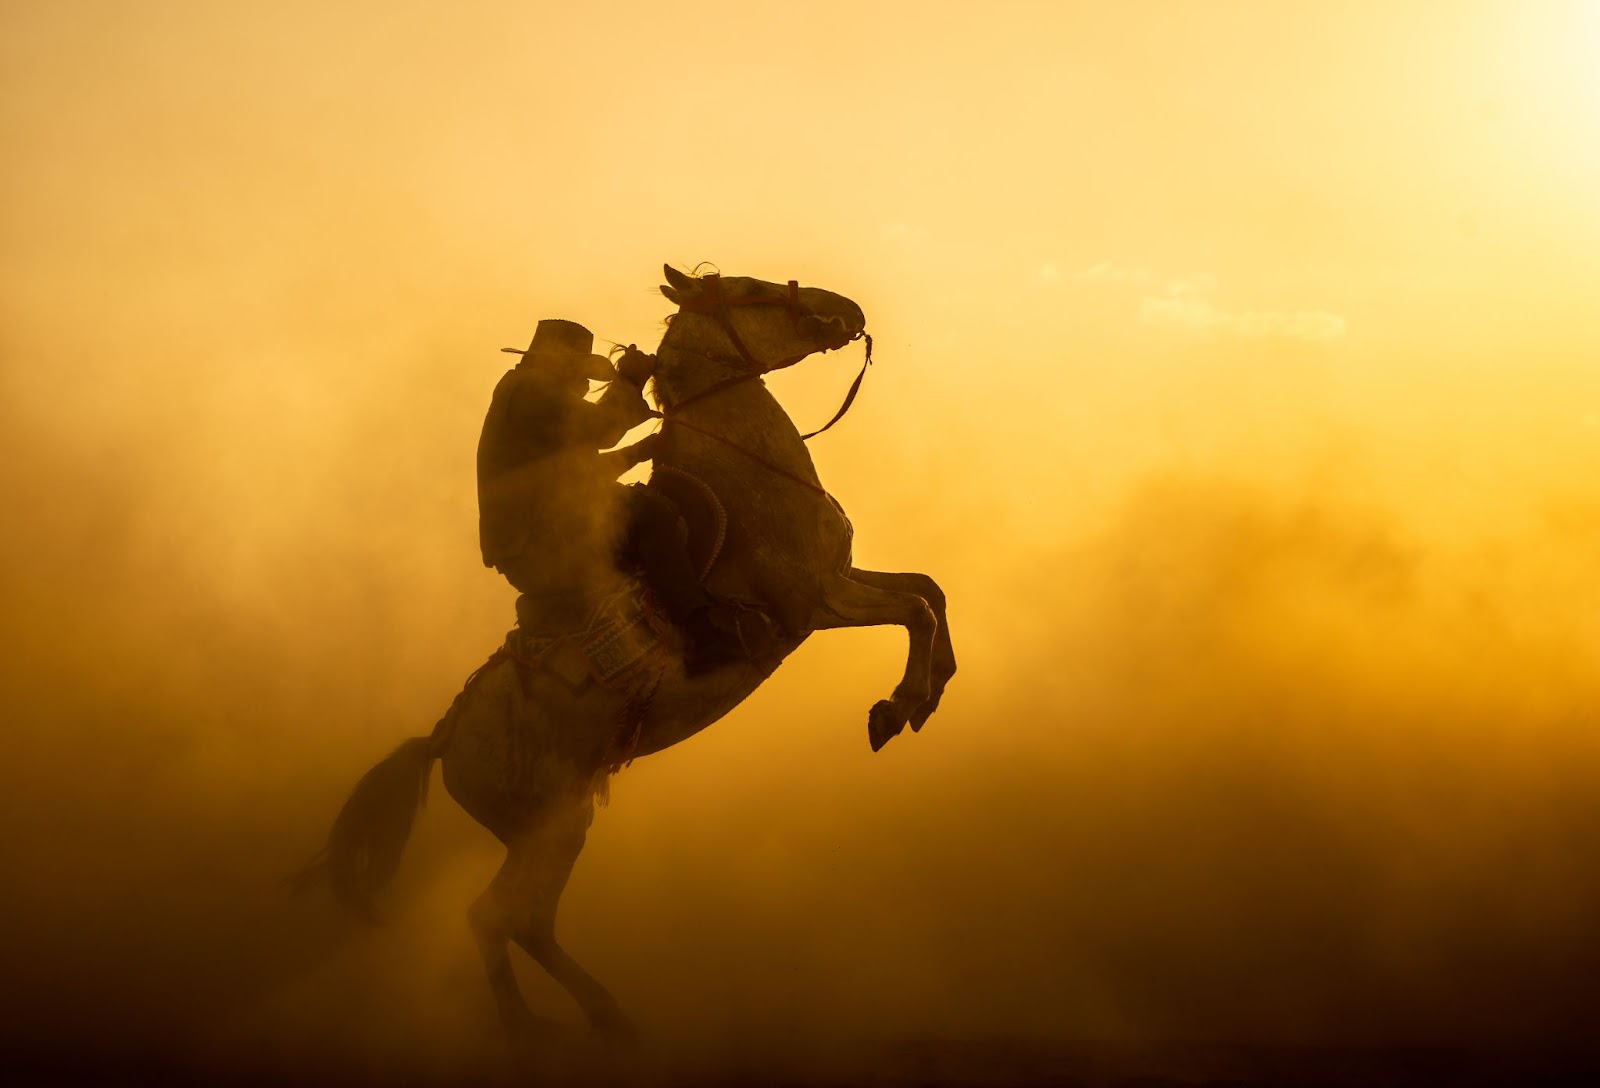 Peão montado em cavalo em meio a fumaça amarelada.